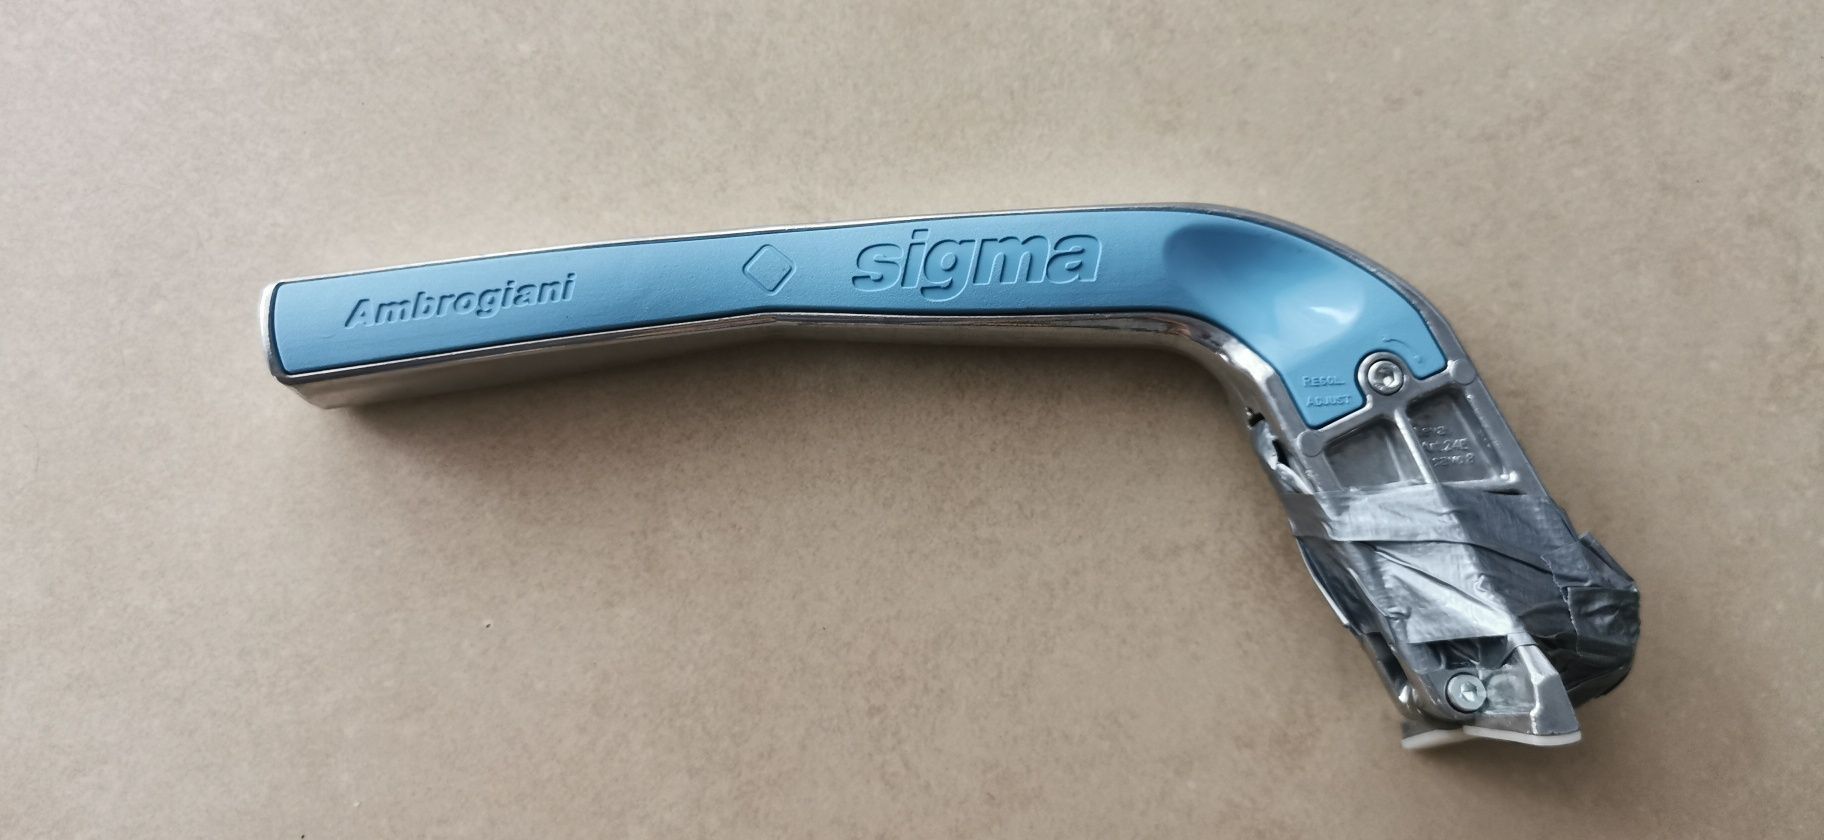 SIGMA rączka uchwyt do ręcznych przecinarek do glazury 3C2-3D2